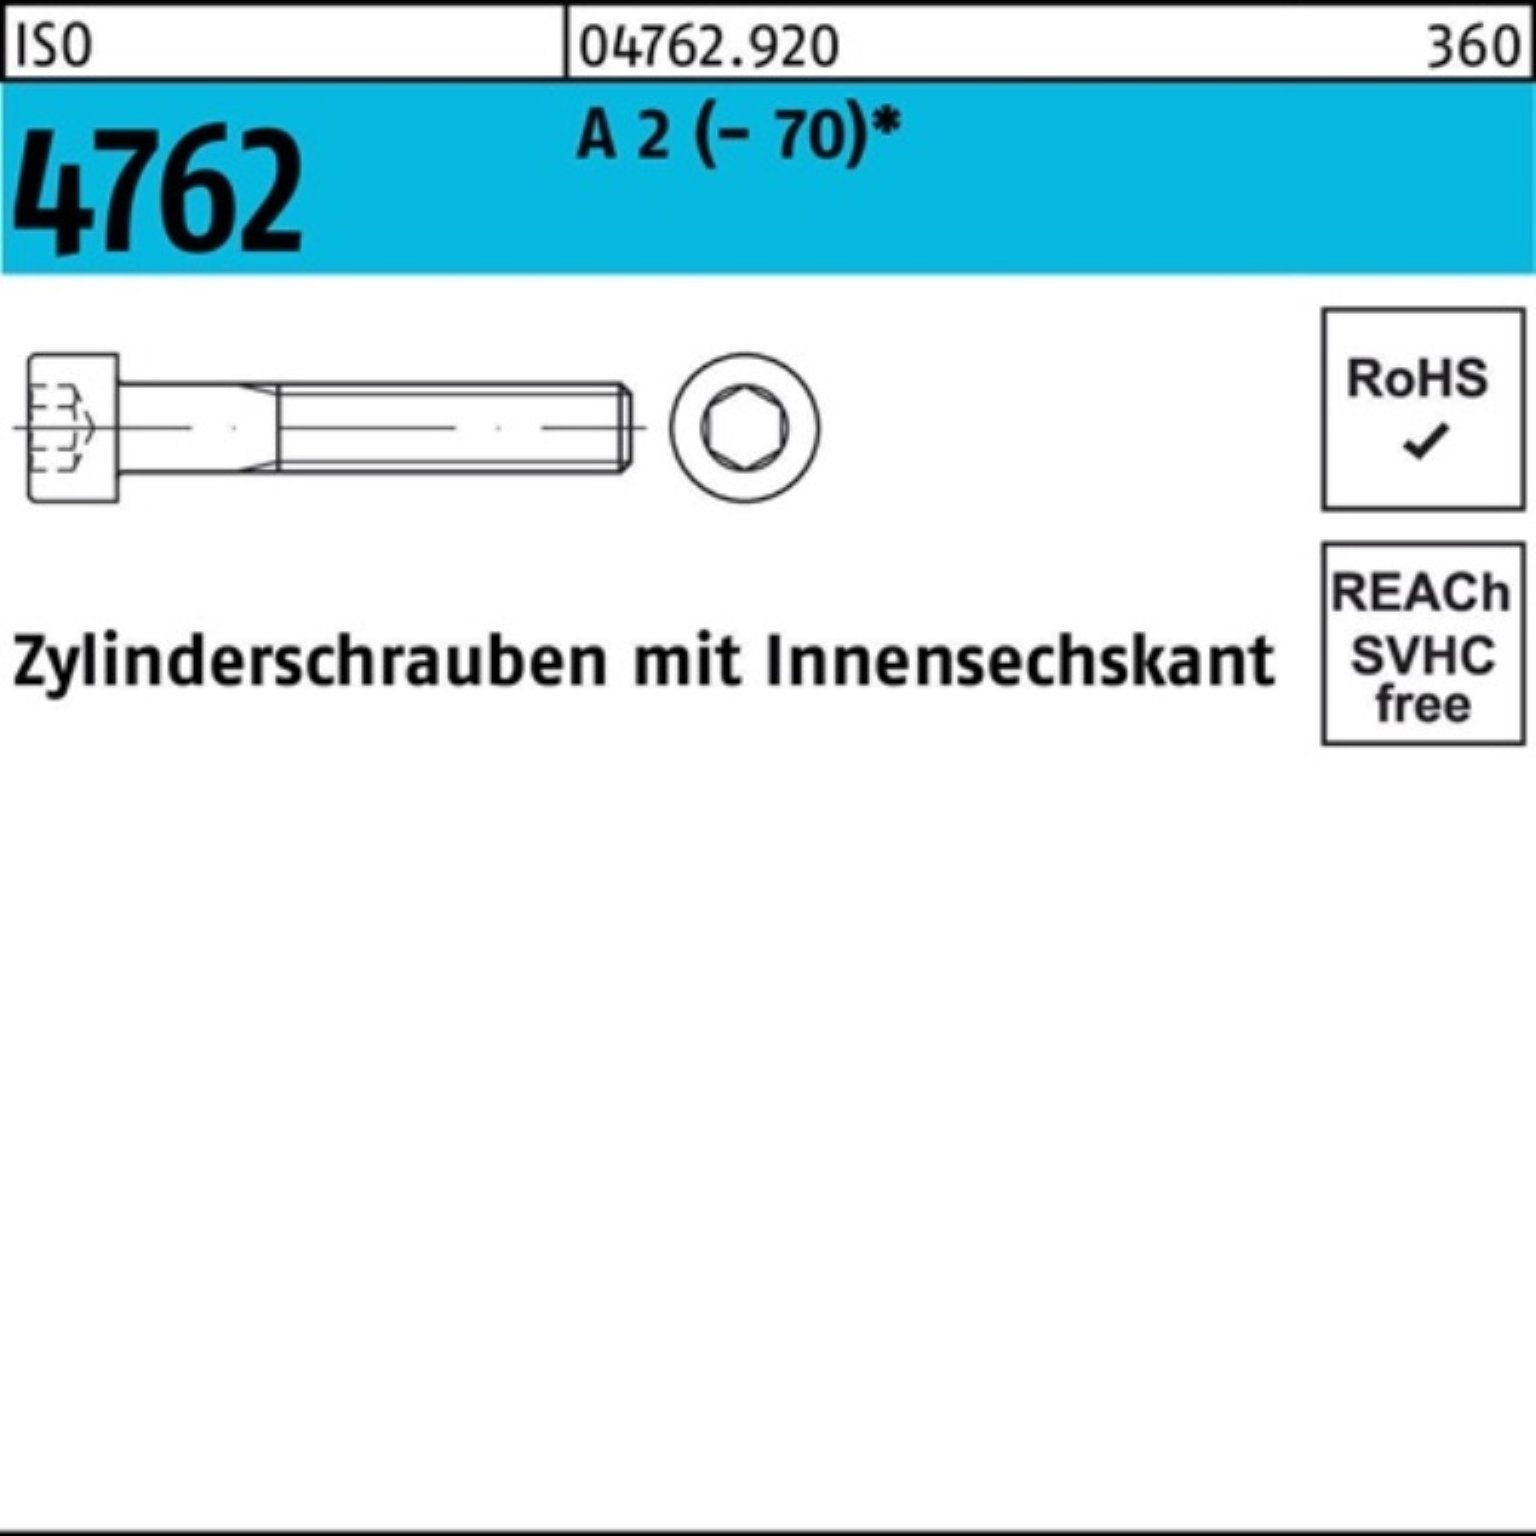 Reyher Zylinderschraube 1 M24x S Pack 4762 120 ISO Innen-6kt A 2 (70) Zylinderschraube 100er